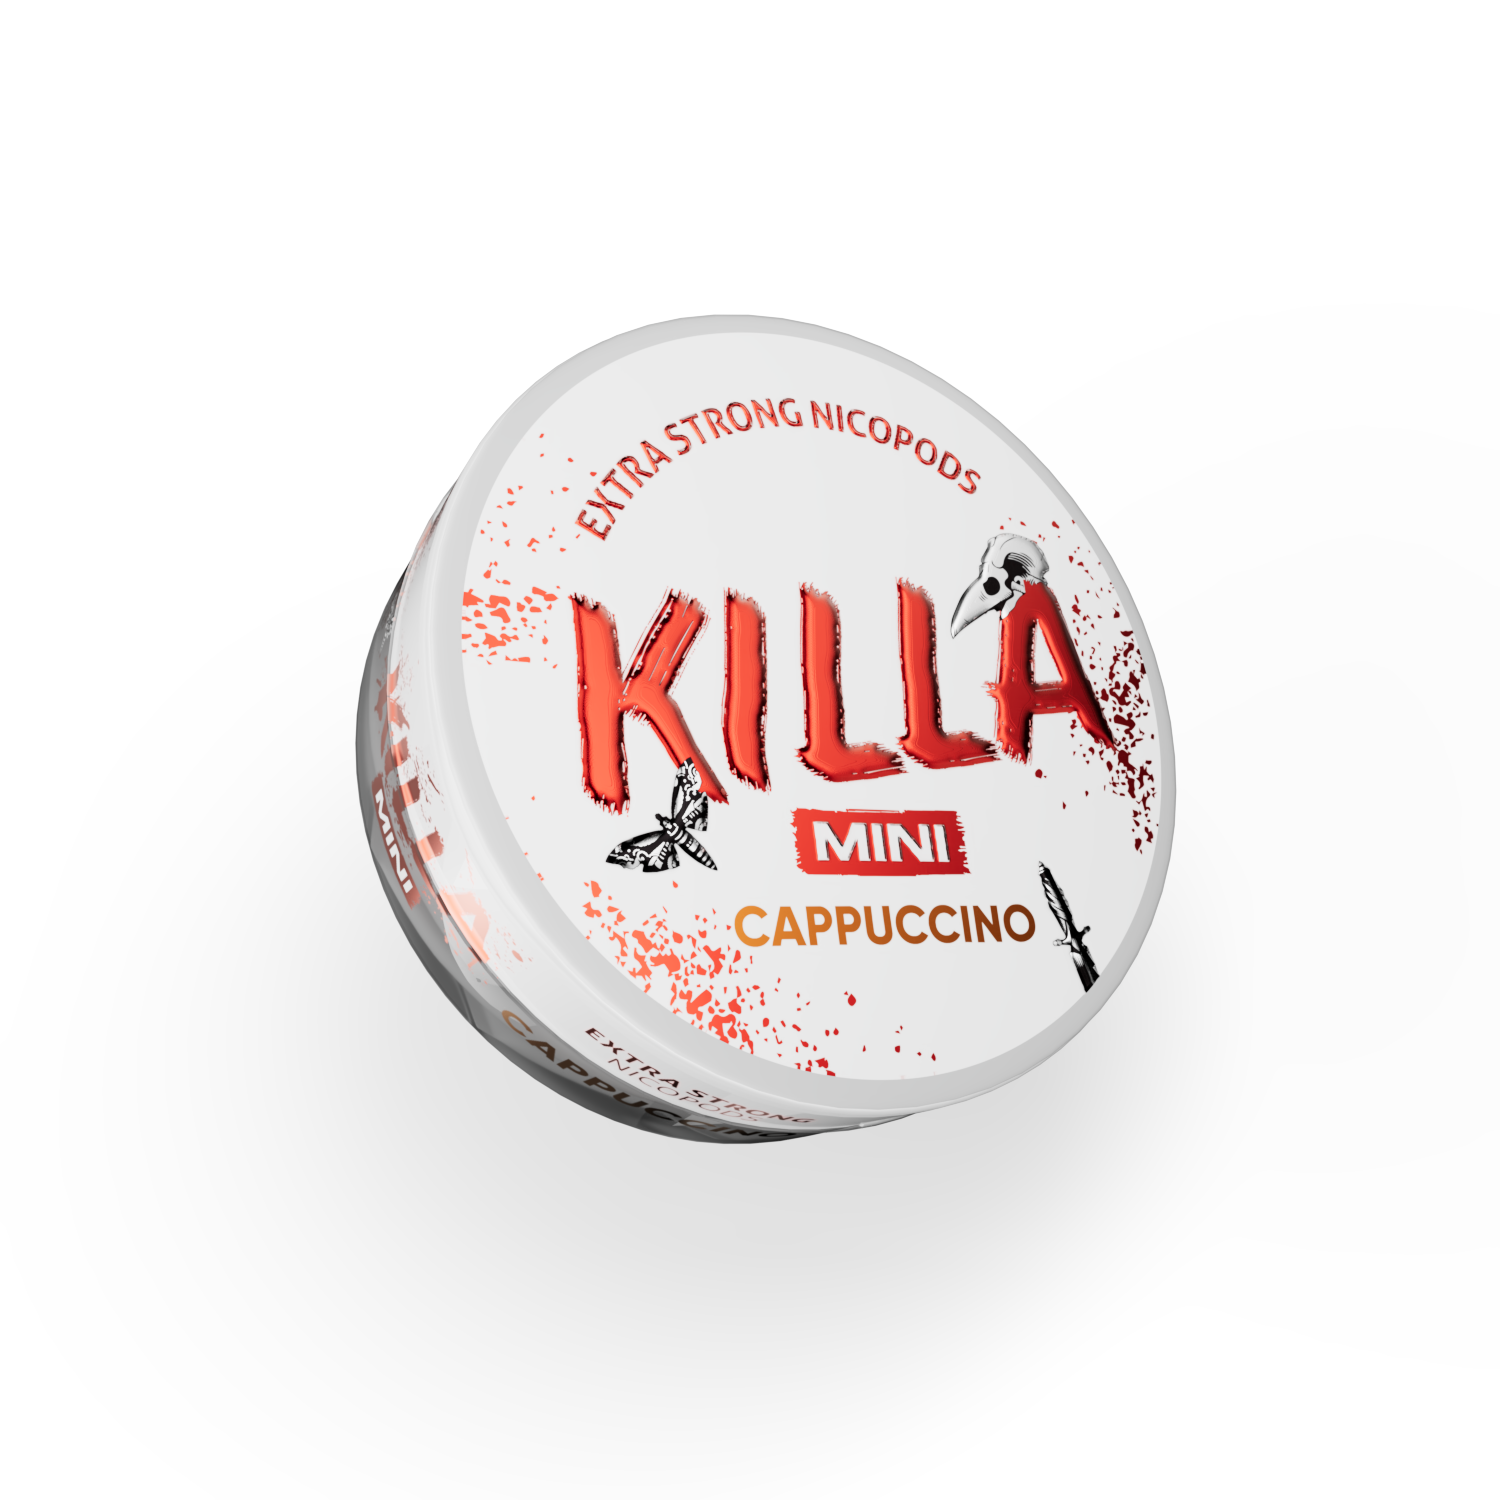 Killa_Mini_Cappuccino_2_uus